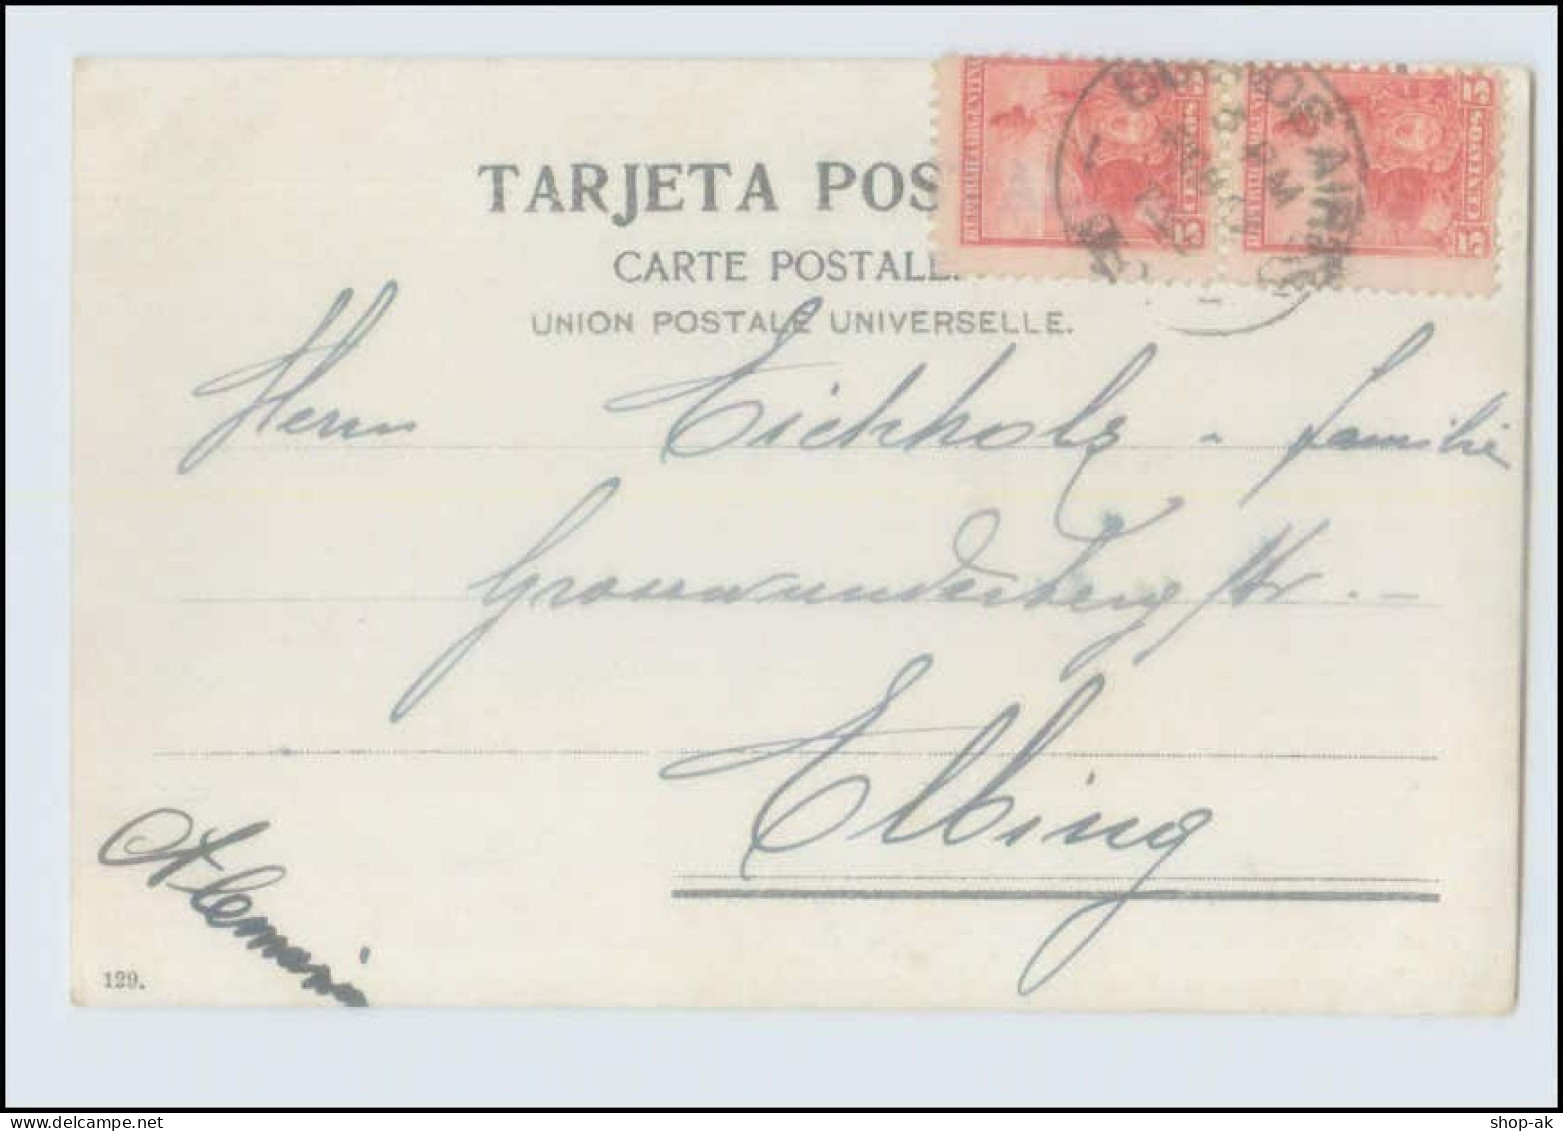 W8B88/ Rosario - Boulev. Santafecino Argentinien AK 1908 - Argentinien